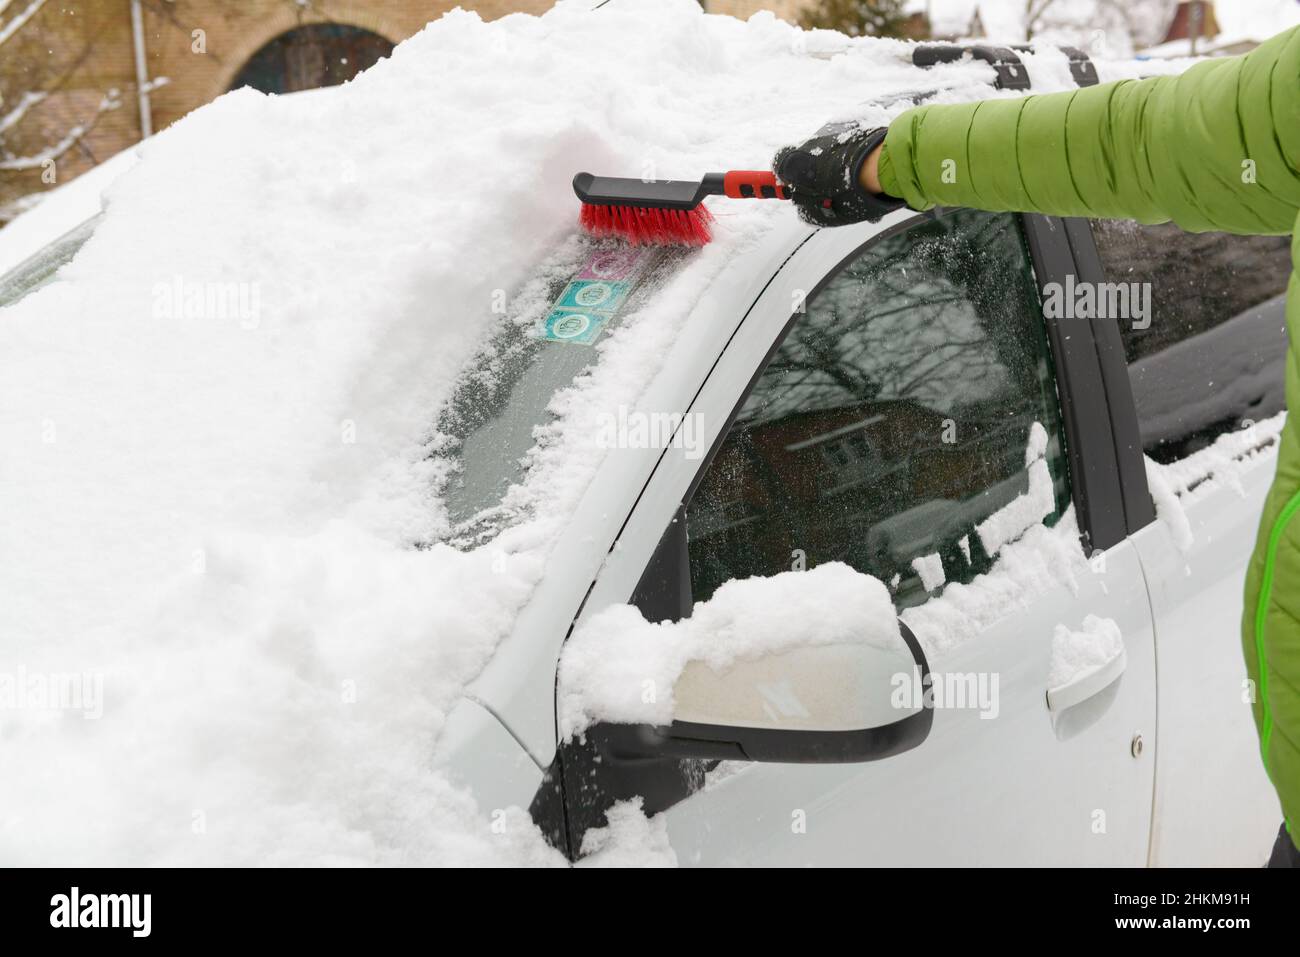 Entfernen Des Schnee Vom Auto Mit Einer Pinsel. Mann Reinigt Sein Auto Nach  Einem Schneesturm Stockbild - Bild von mann, schneesturm: 211619477